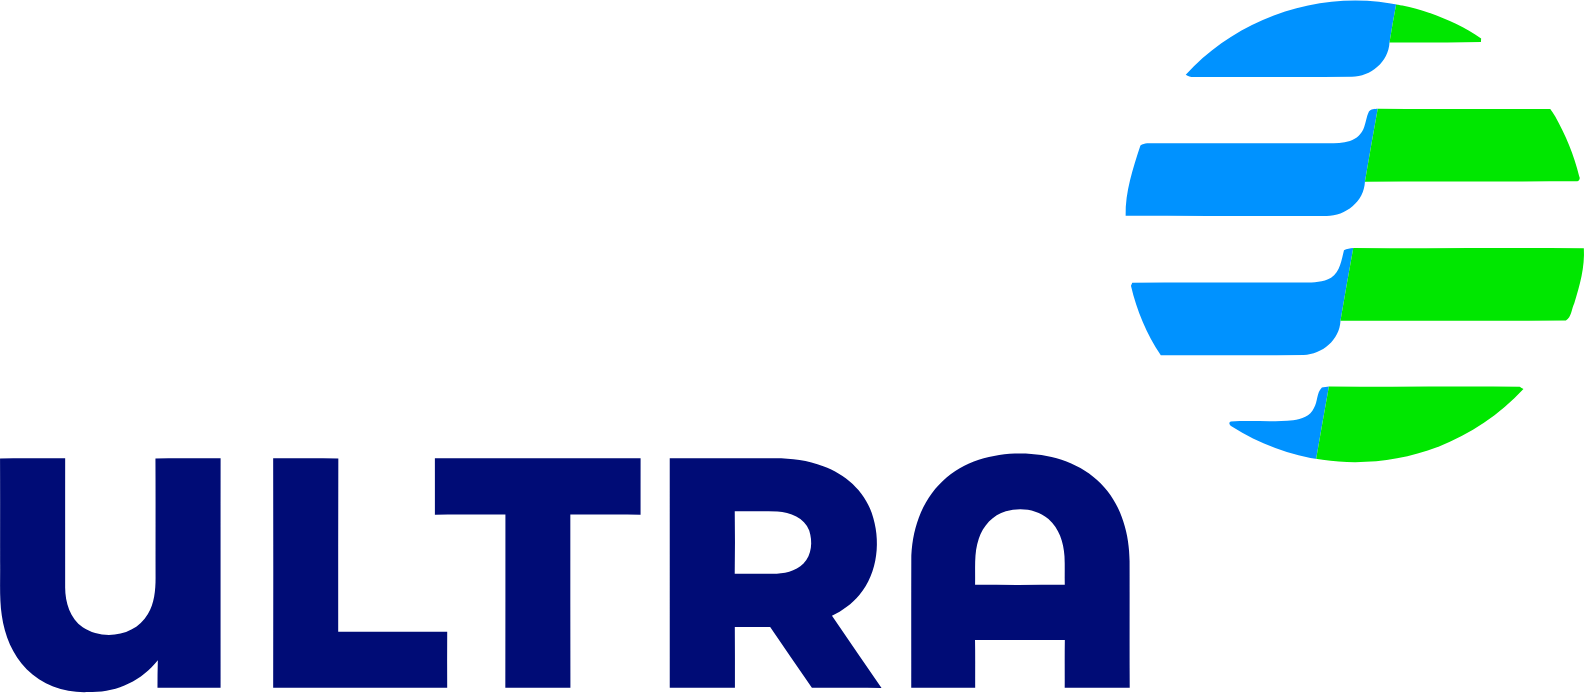 Ultrapar Participacoes logo large (transparent PNG)